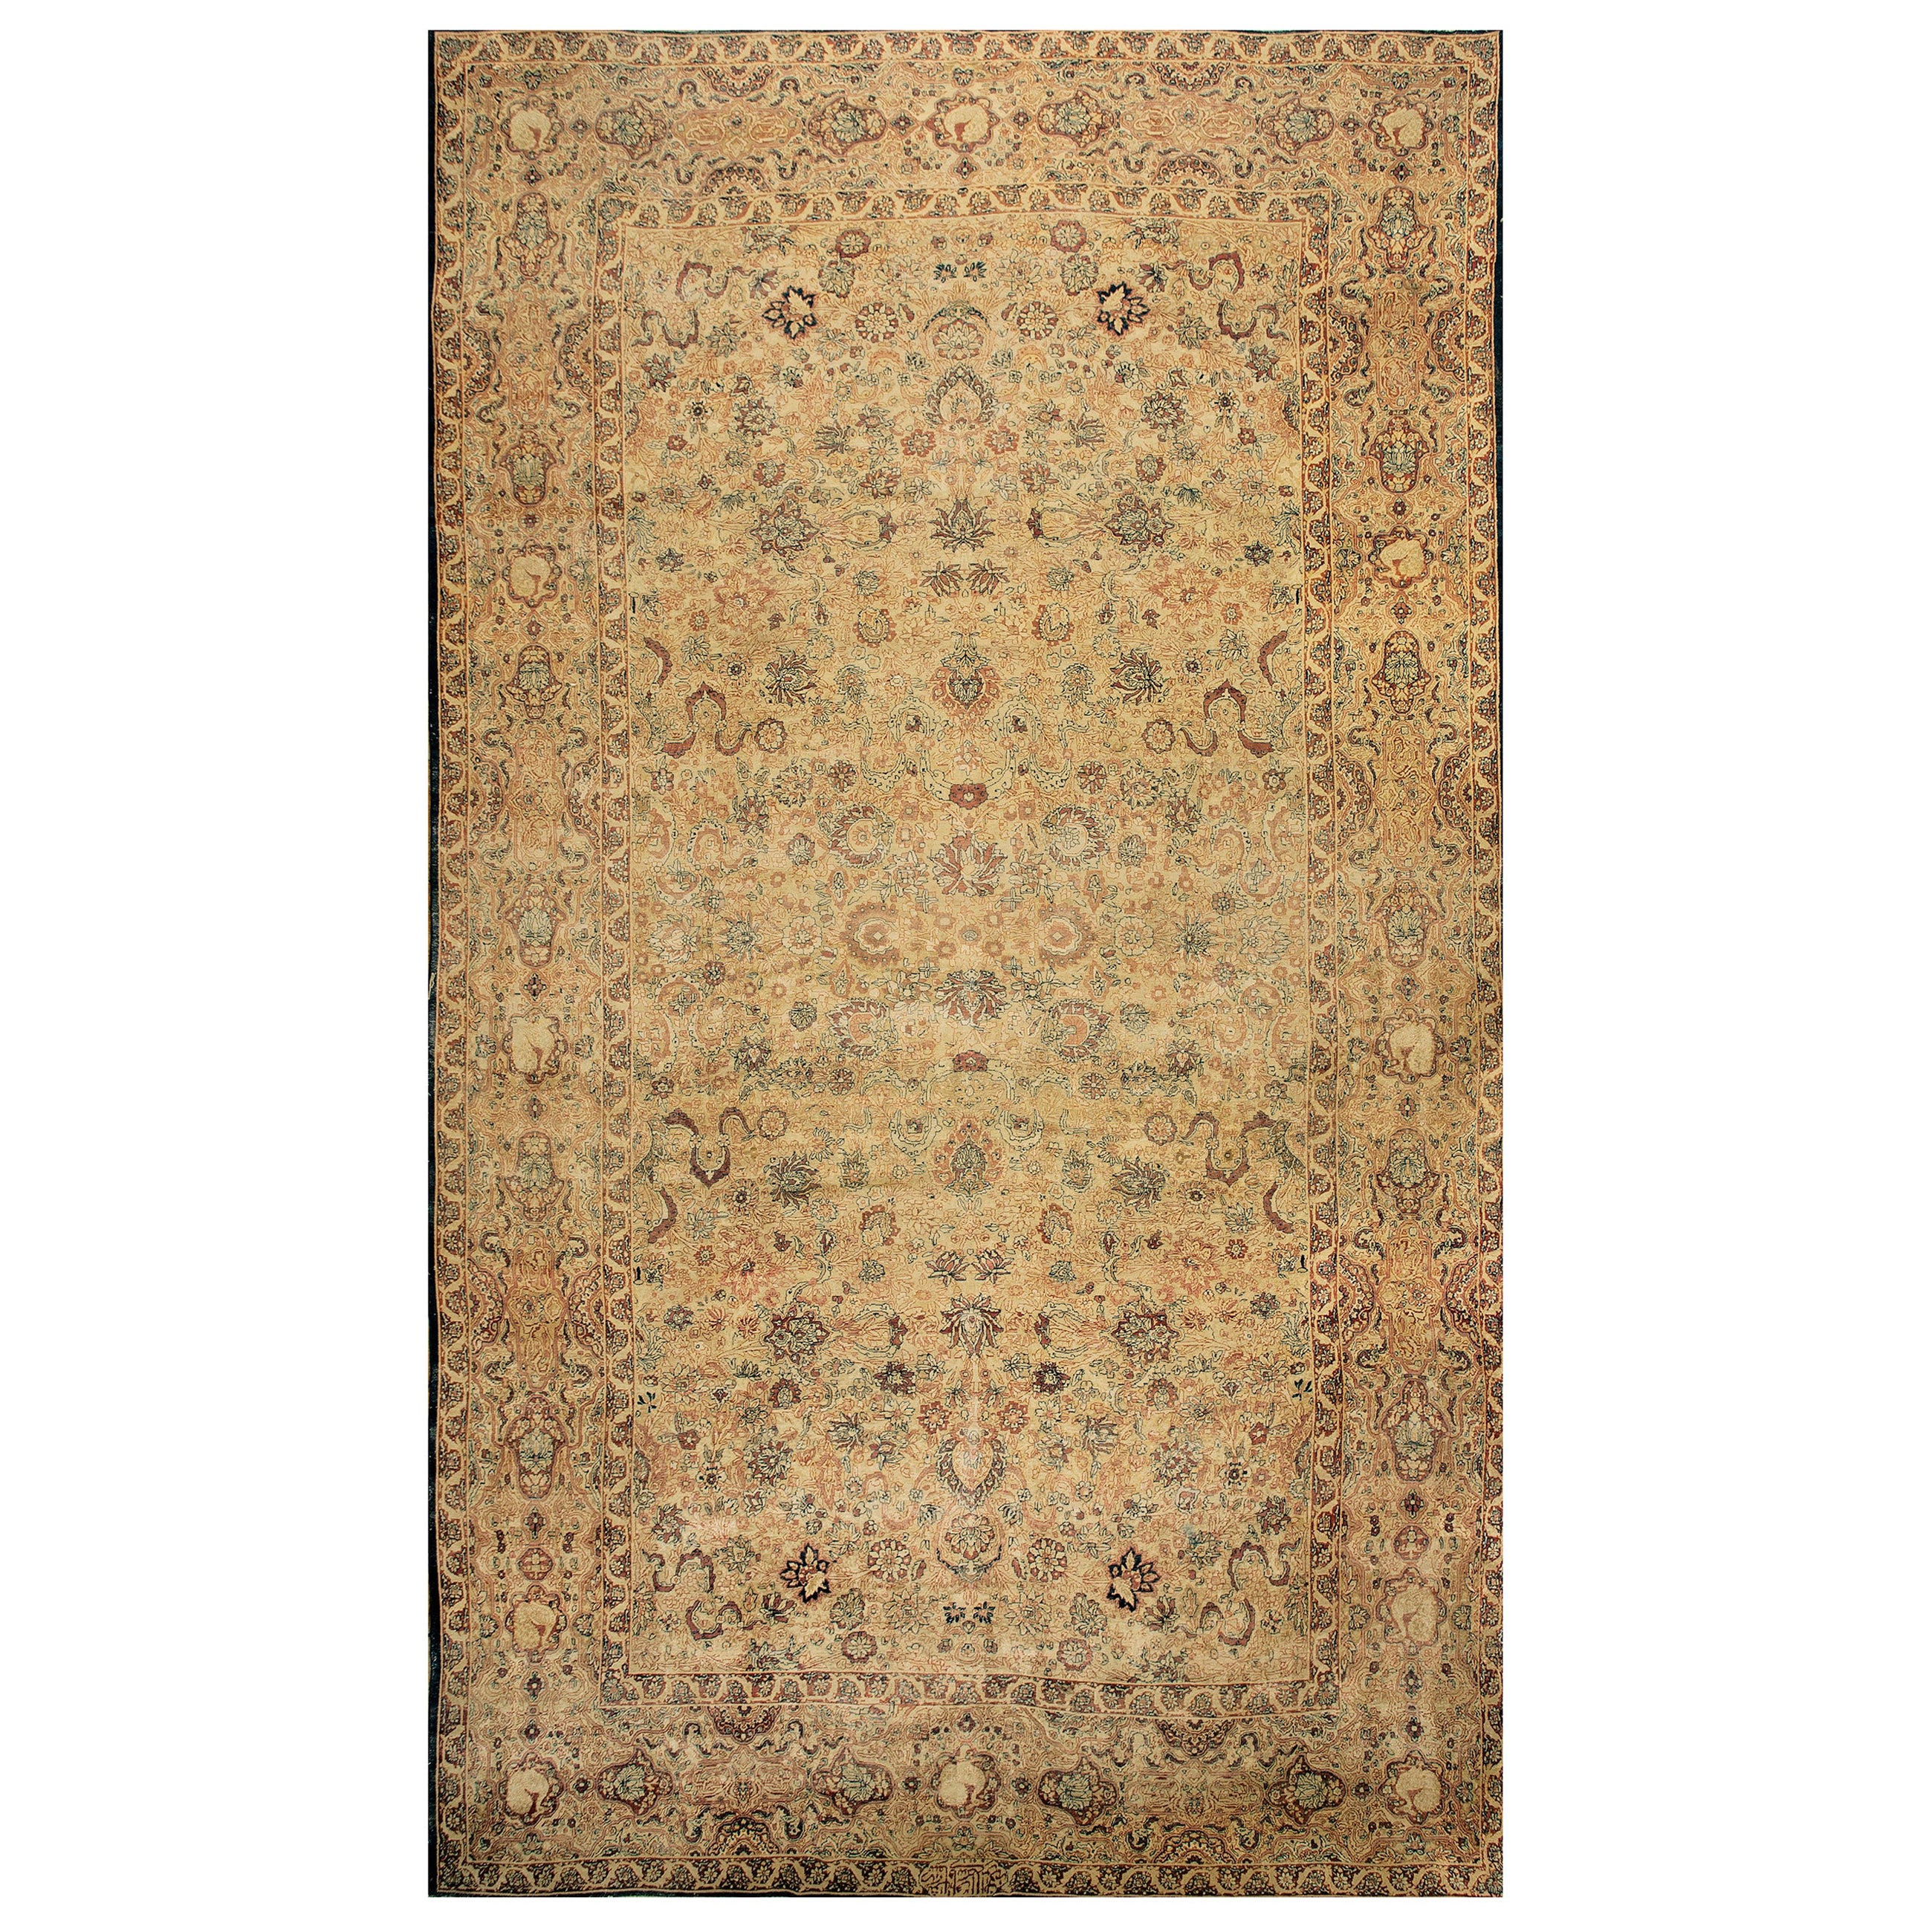 Late 19th Century Persian Lavar Kirman Carpet ( 9'10" x 17'4" - 300 x 530 )